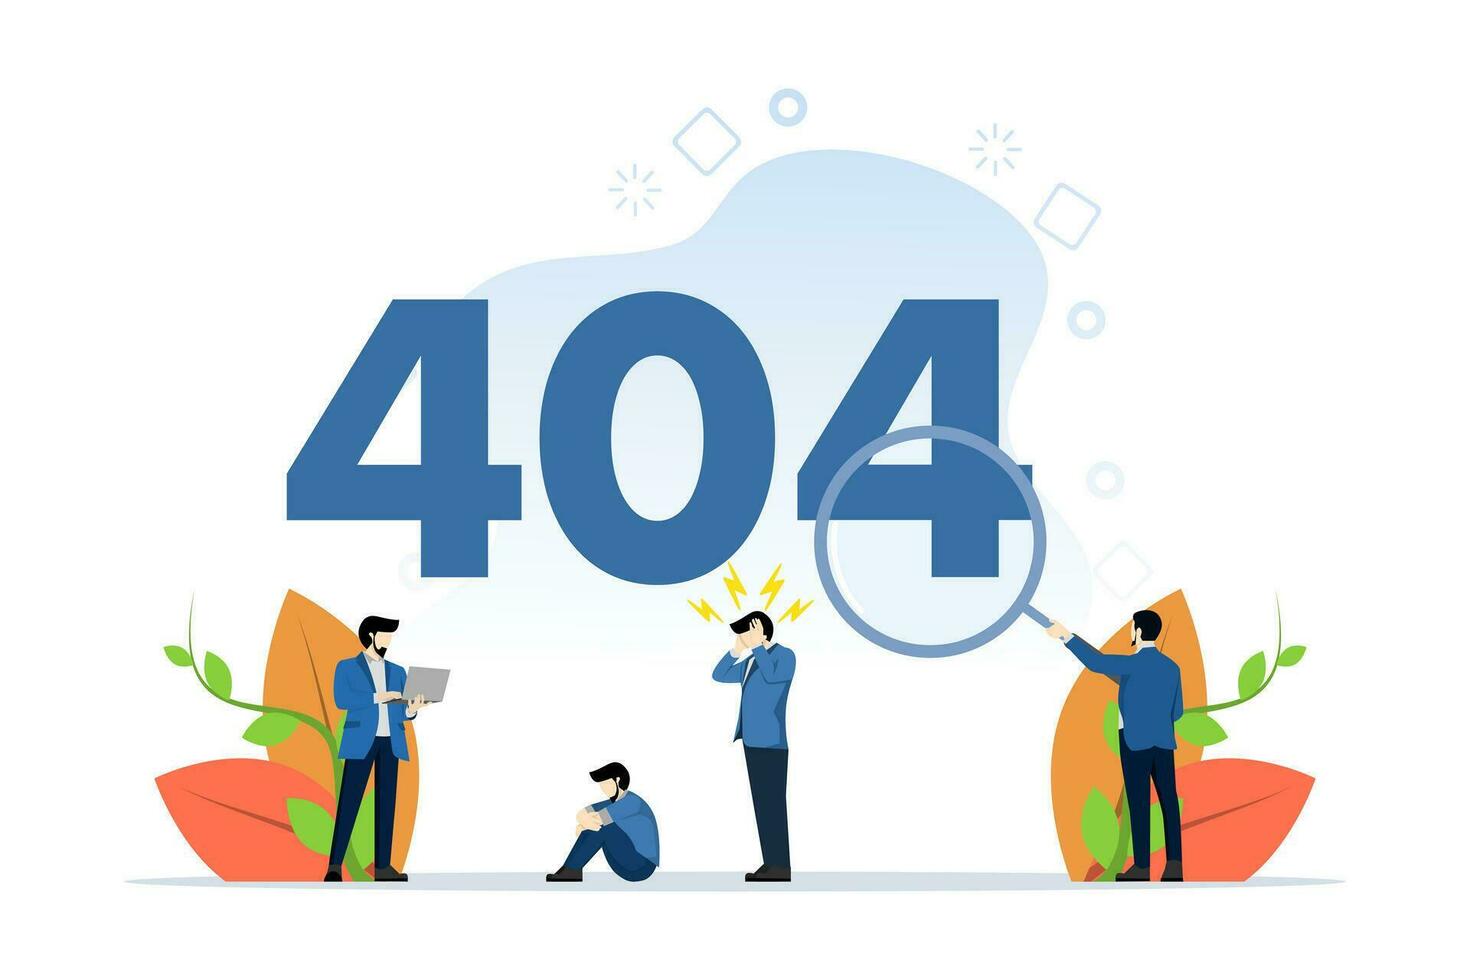 hemsida under konstruktion begrepp, visning 404 internet förbindelse problem meddelande, lämplig för landning sida, ui, webb, app intro kort, redaktionell, flygblad och baner, platt vektor illustration.